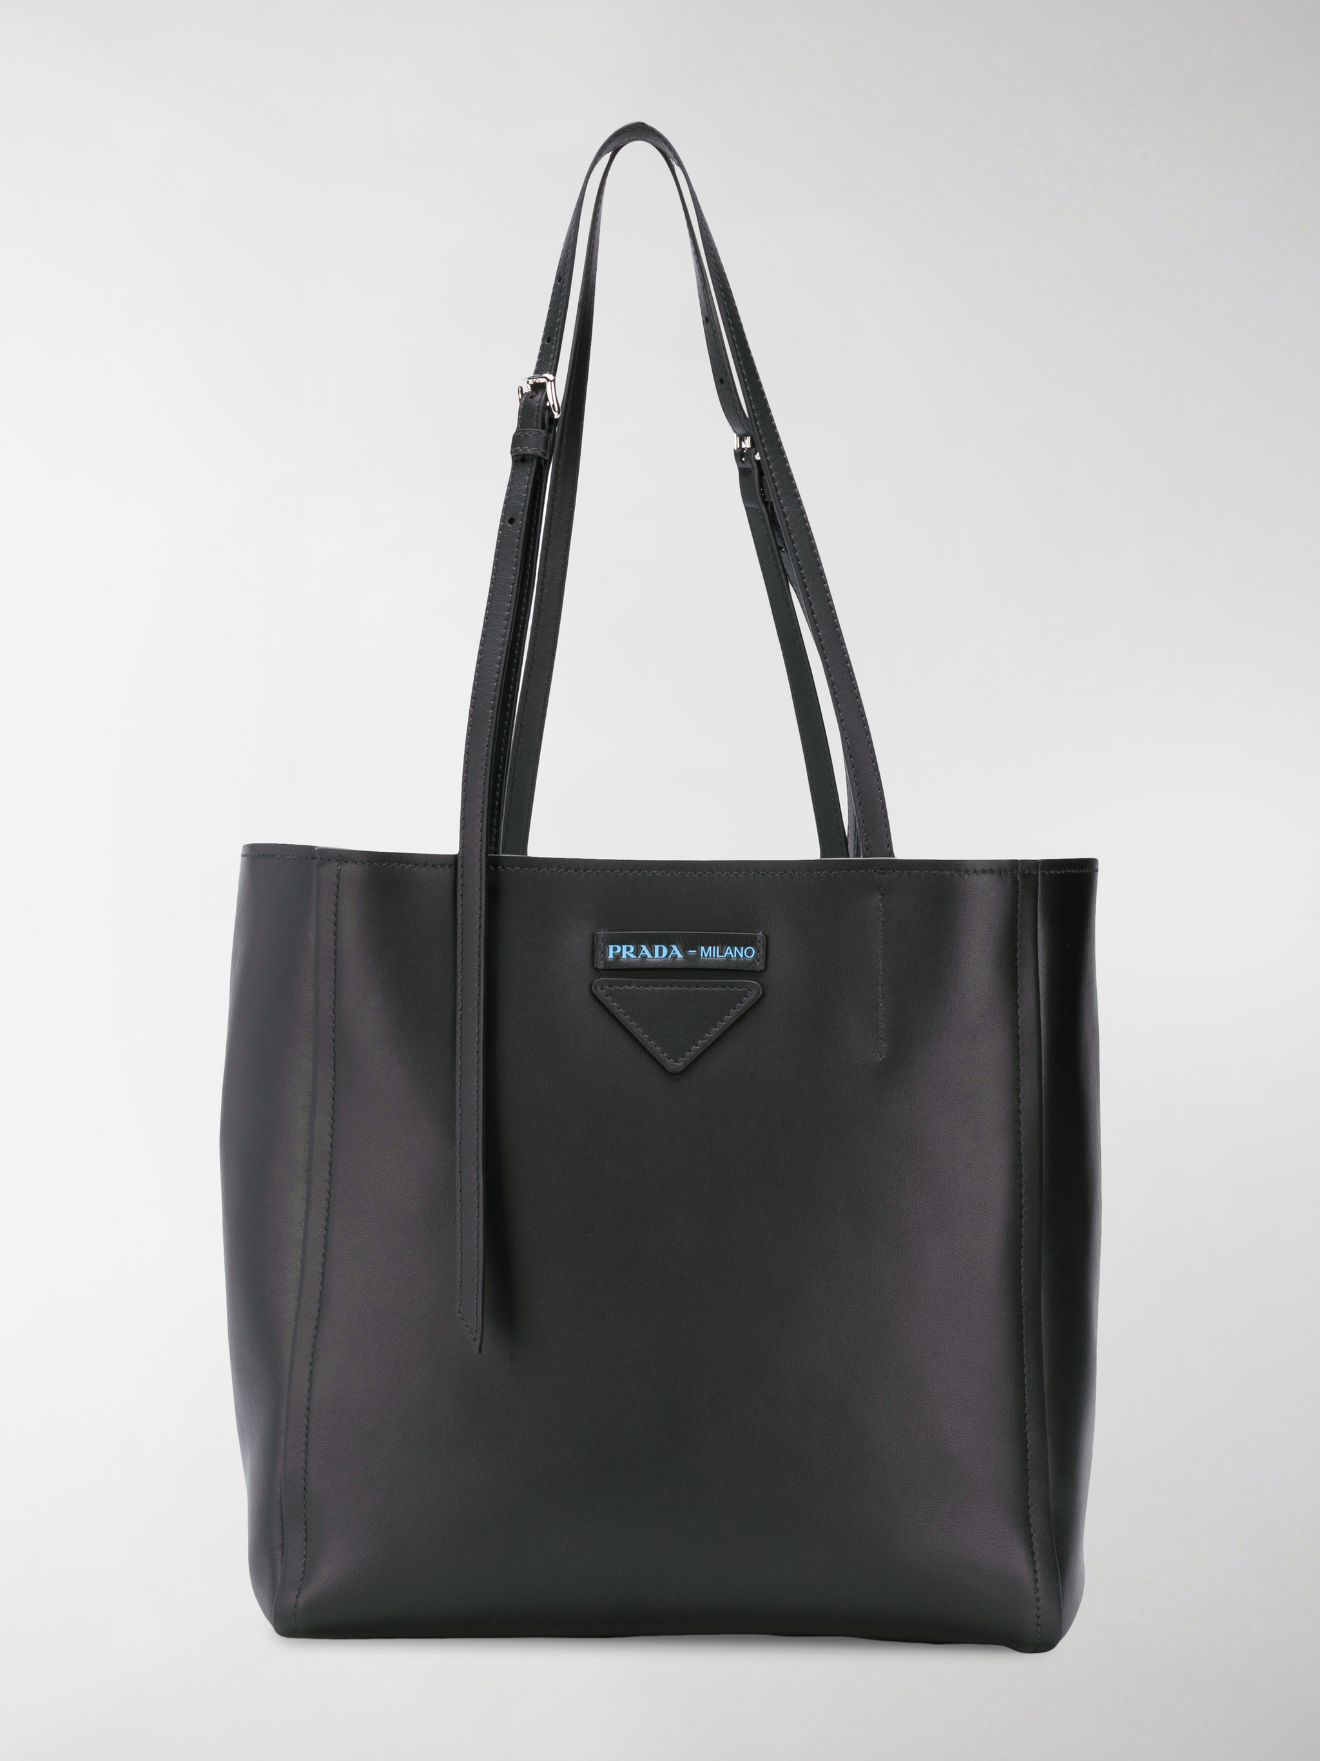 prada concept bag